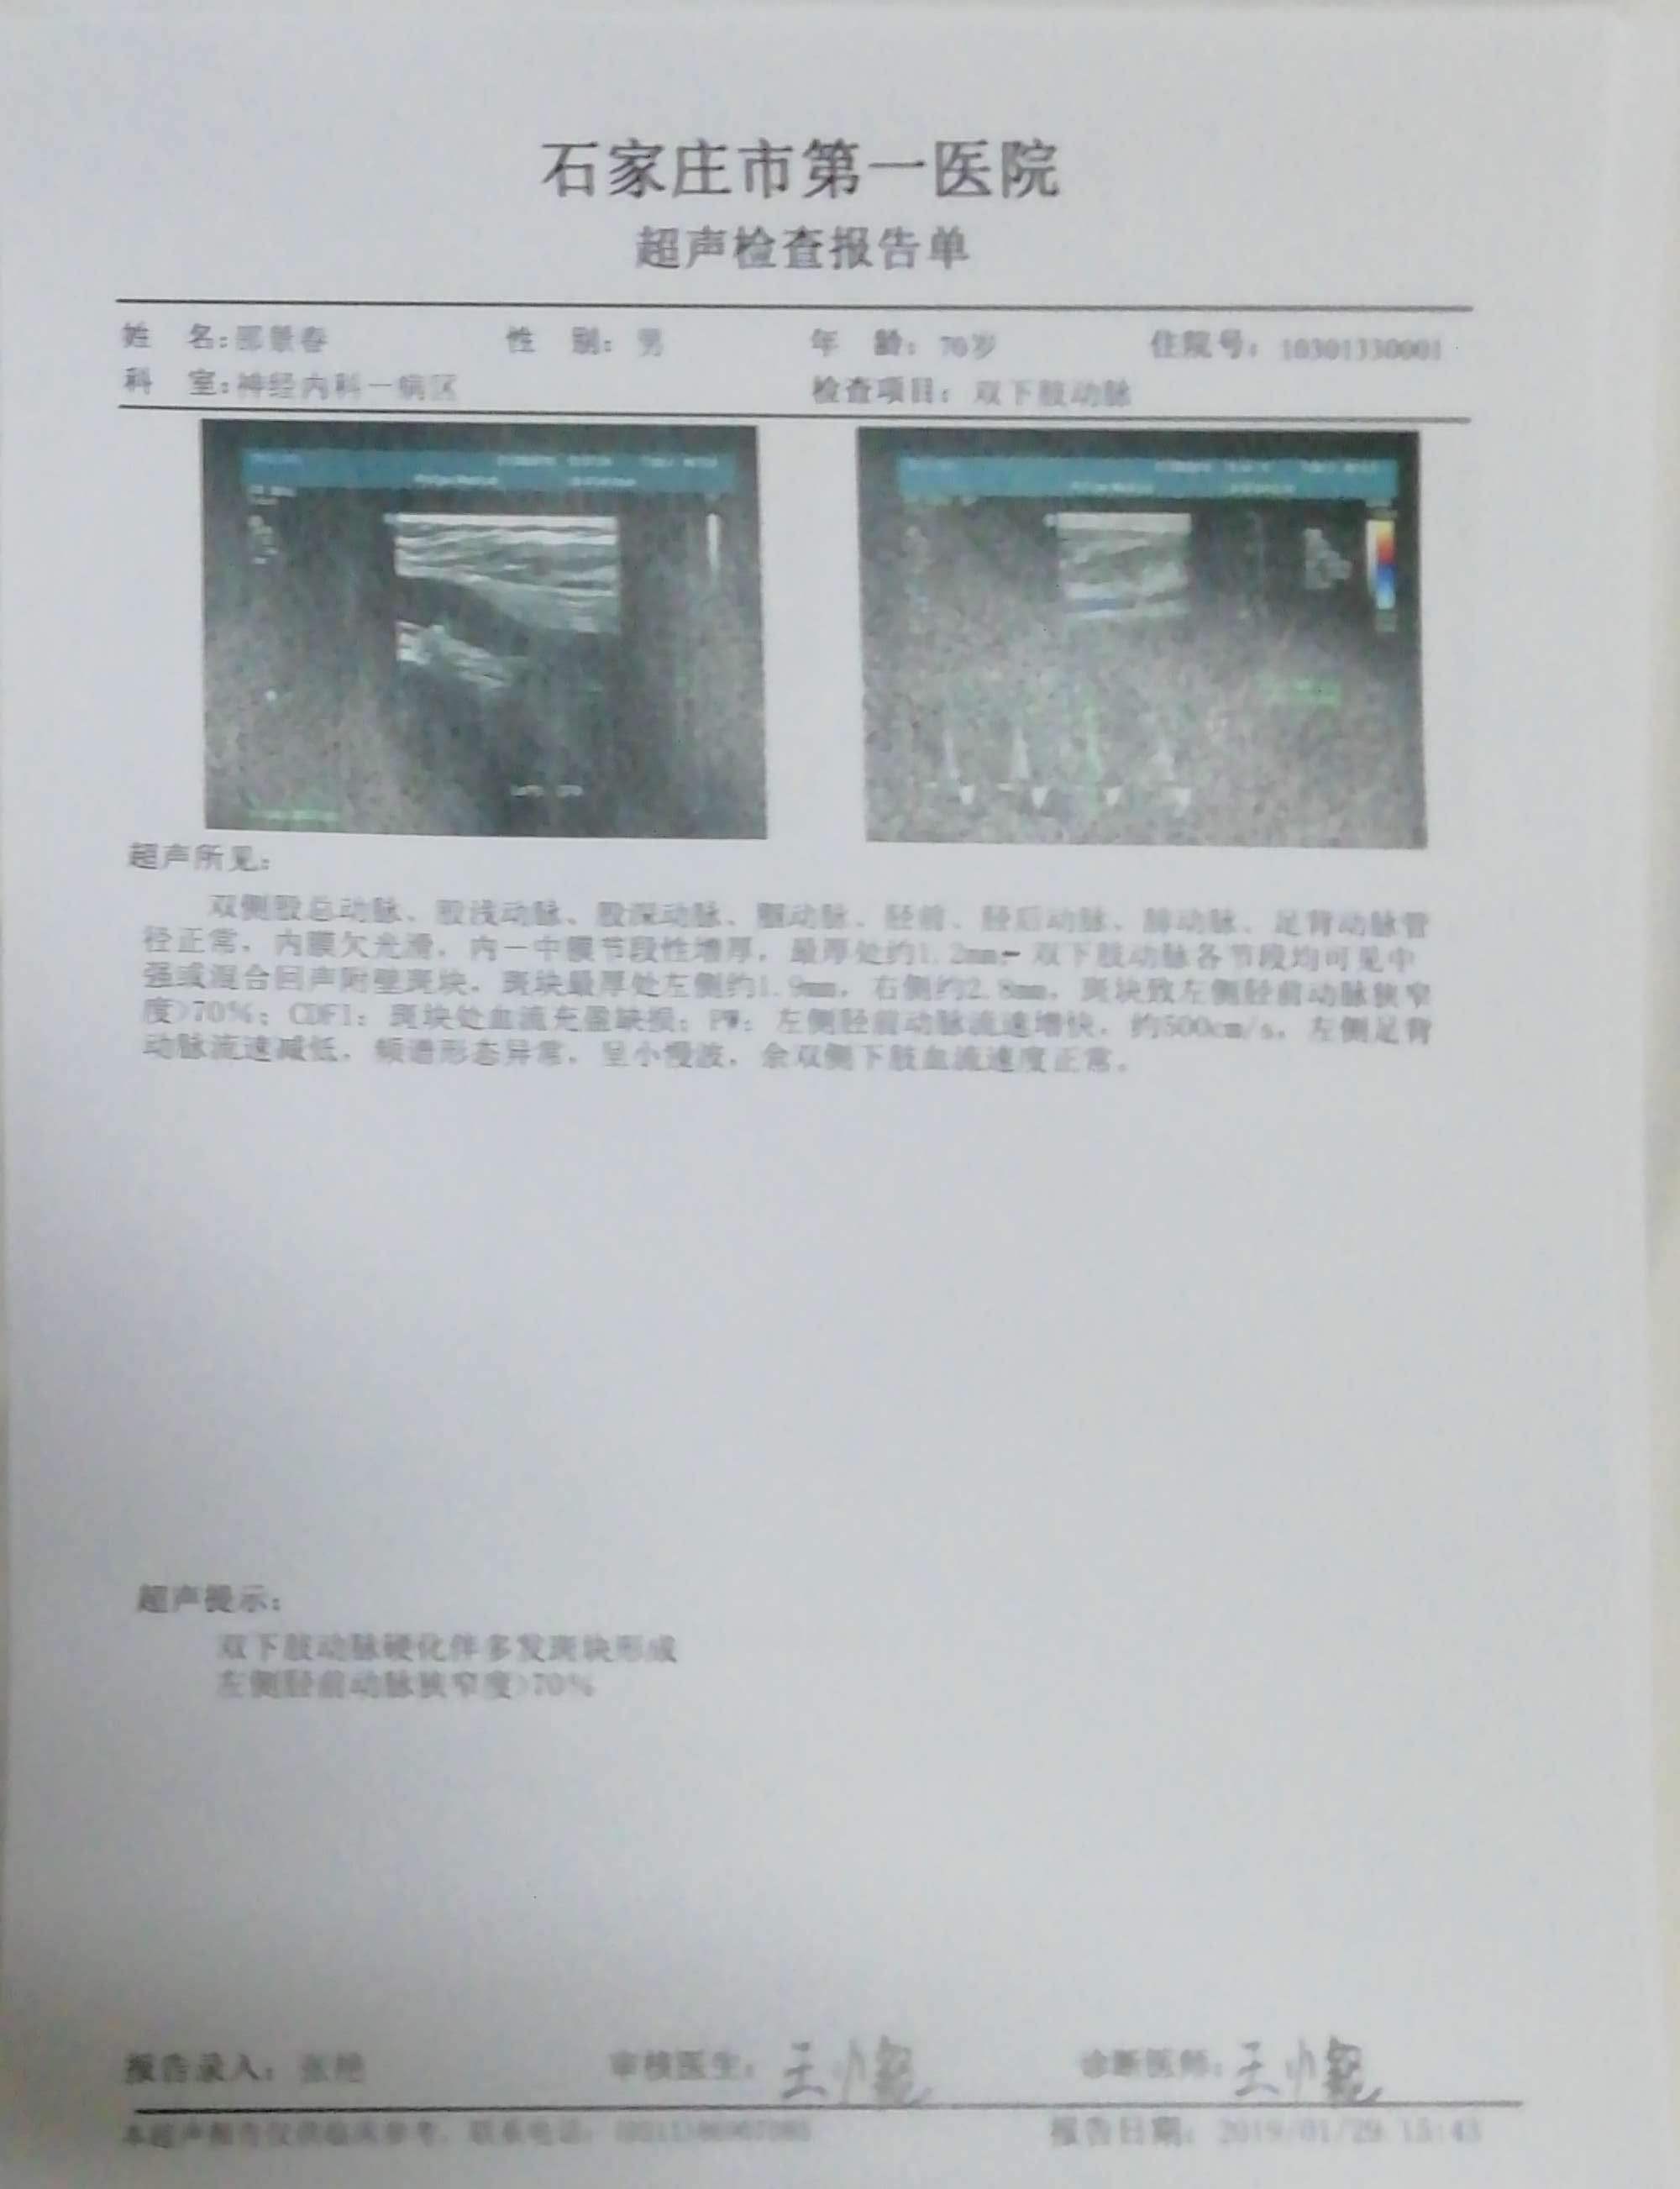 安贞医院黄牛挂号京事通关节炎为什么拍完X光片还需要做超声、核磁?的简单介绍